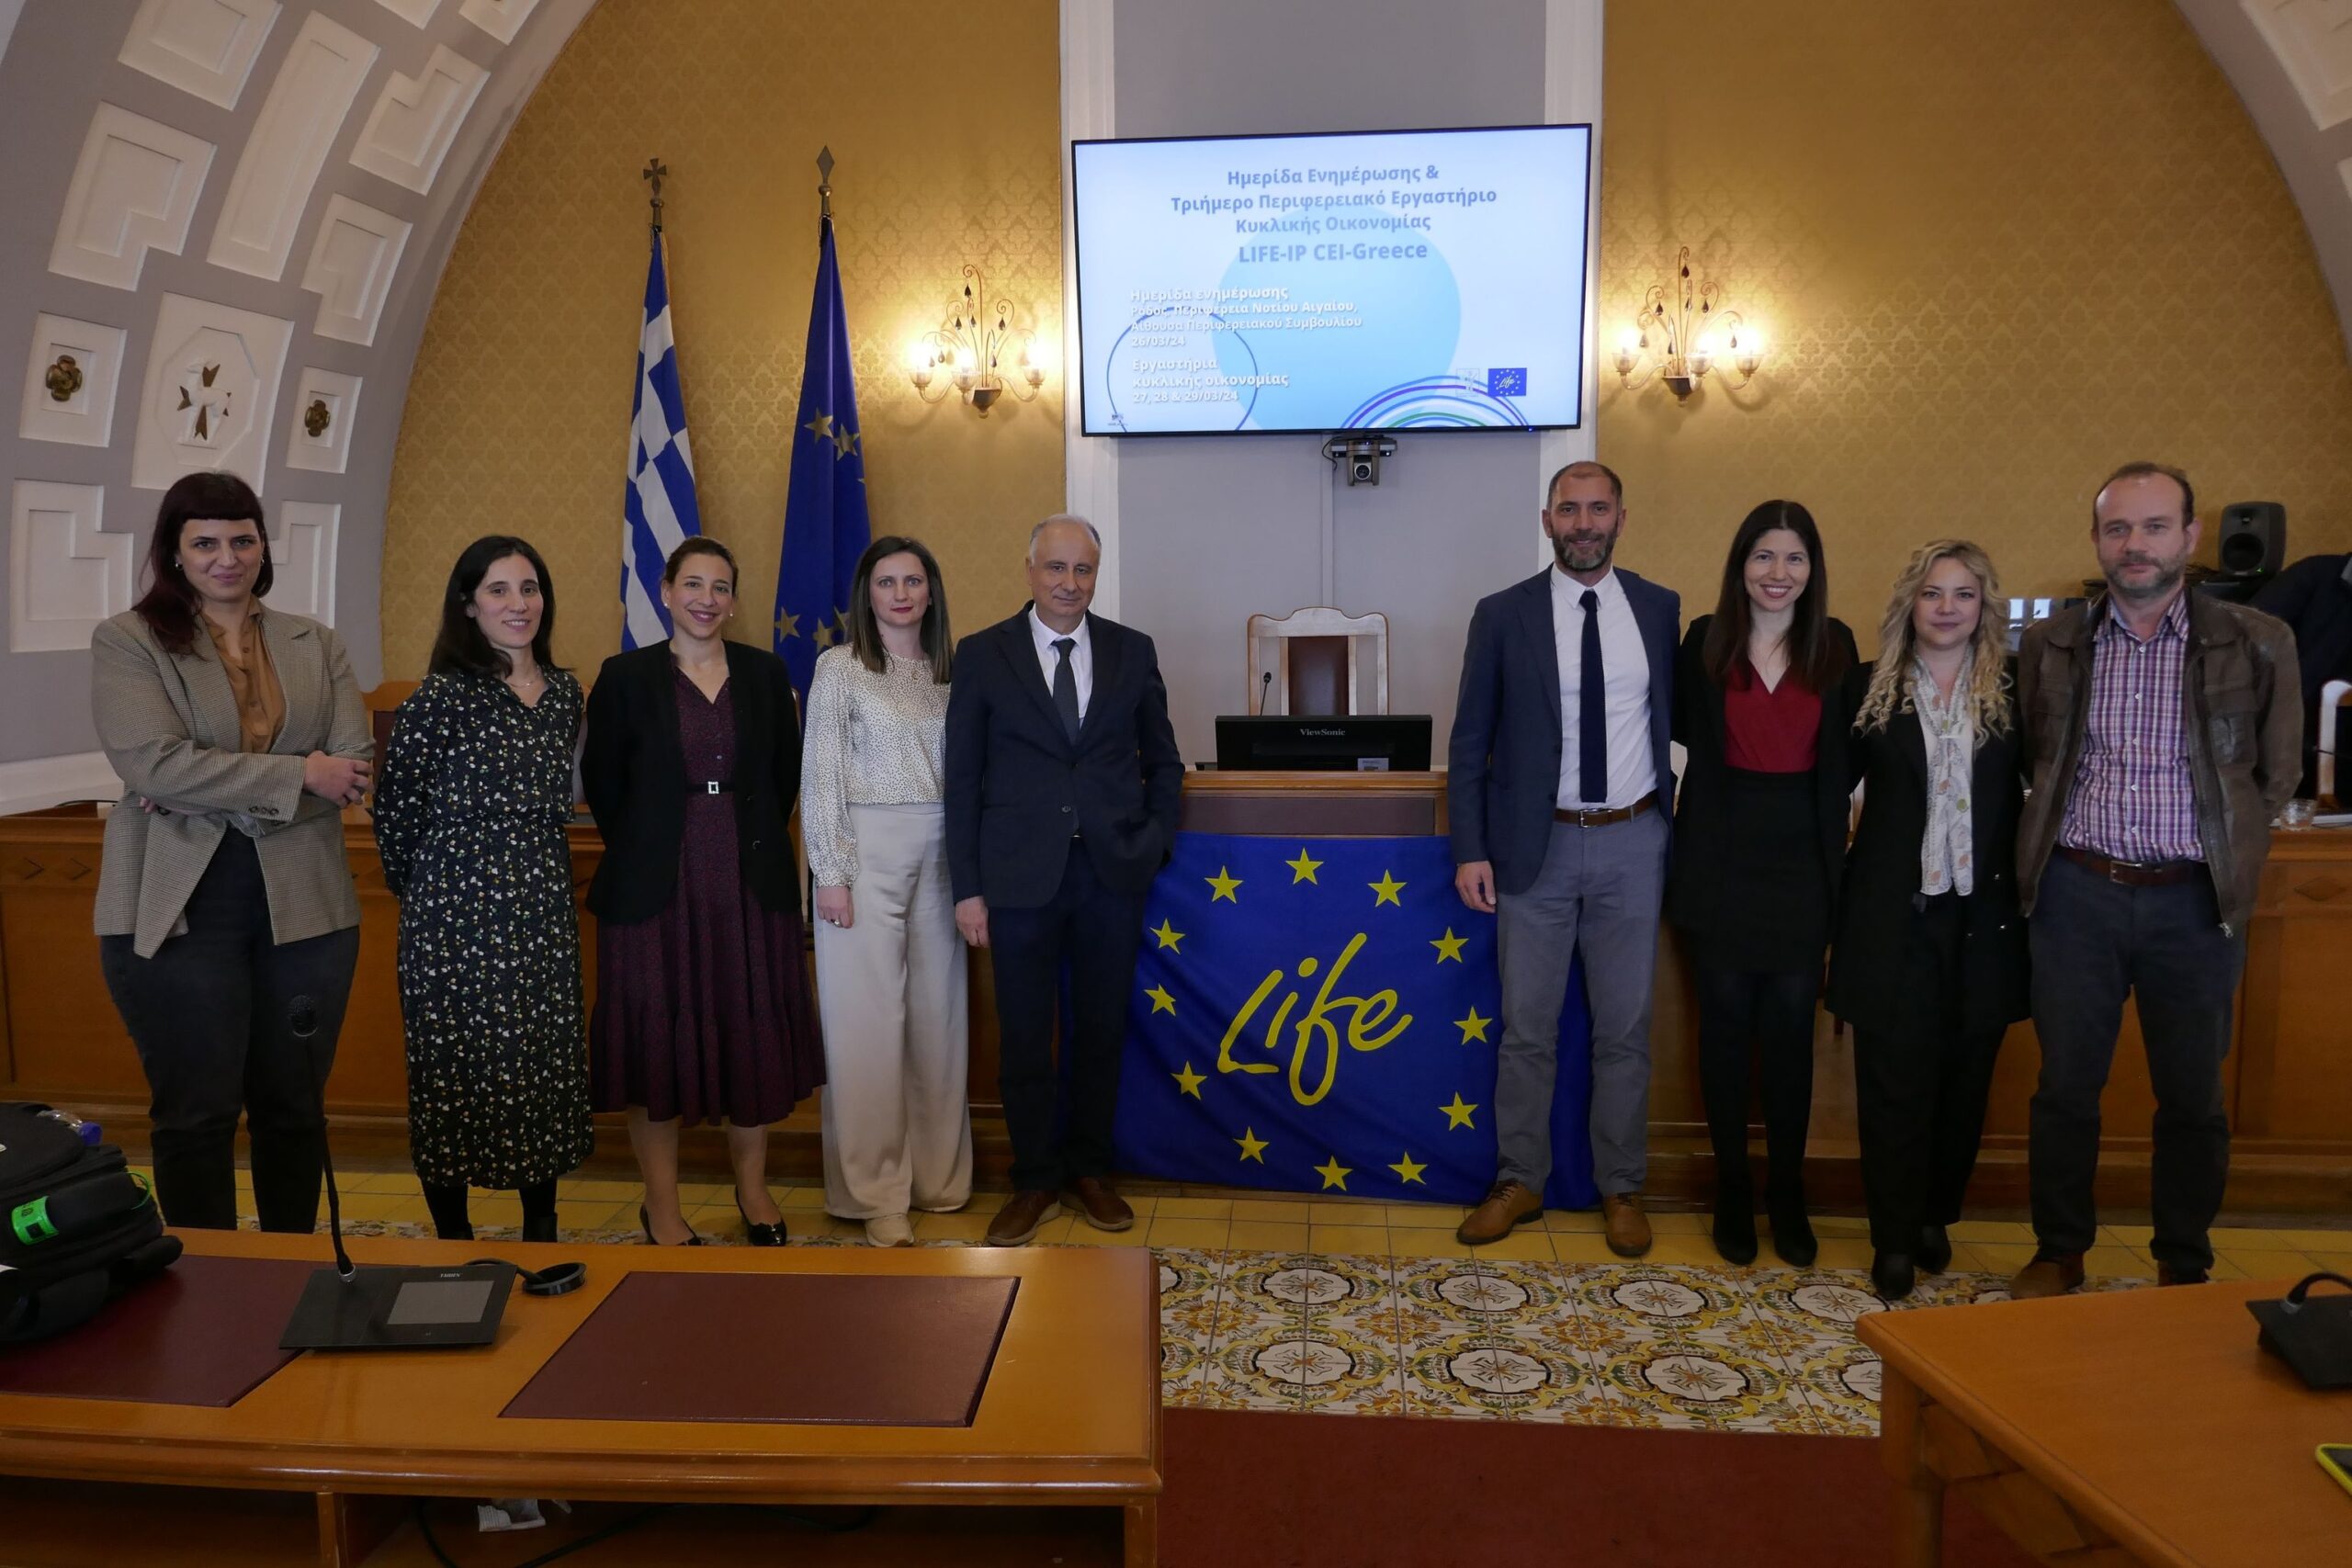 Επιτυχώς ολοκληρώθηκαν οι εκδηλώσεις Κυκλικής Οικονομίας στο Νότιο Αιγαίο, στο πλαίσιο του Έργου LIFE-IP CEI-Greece